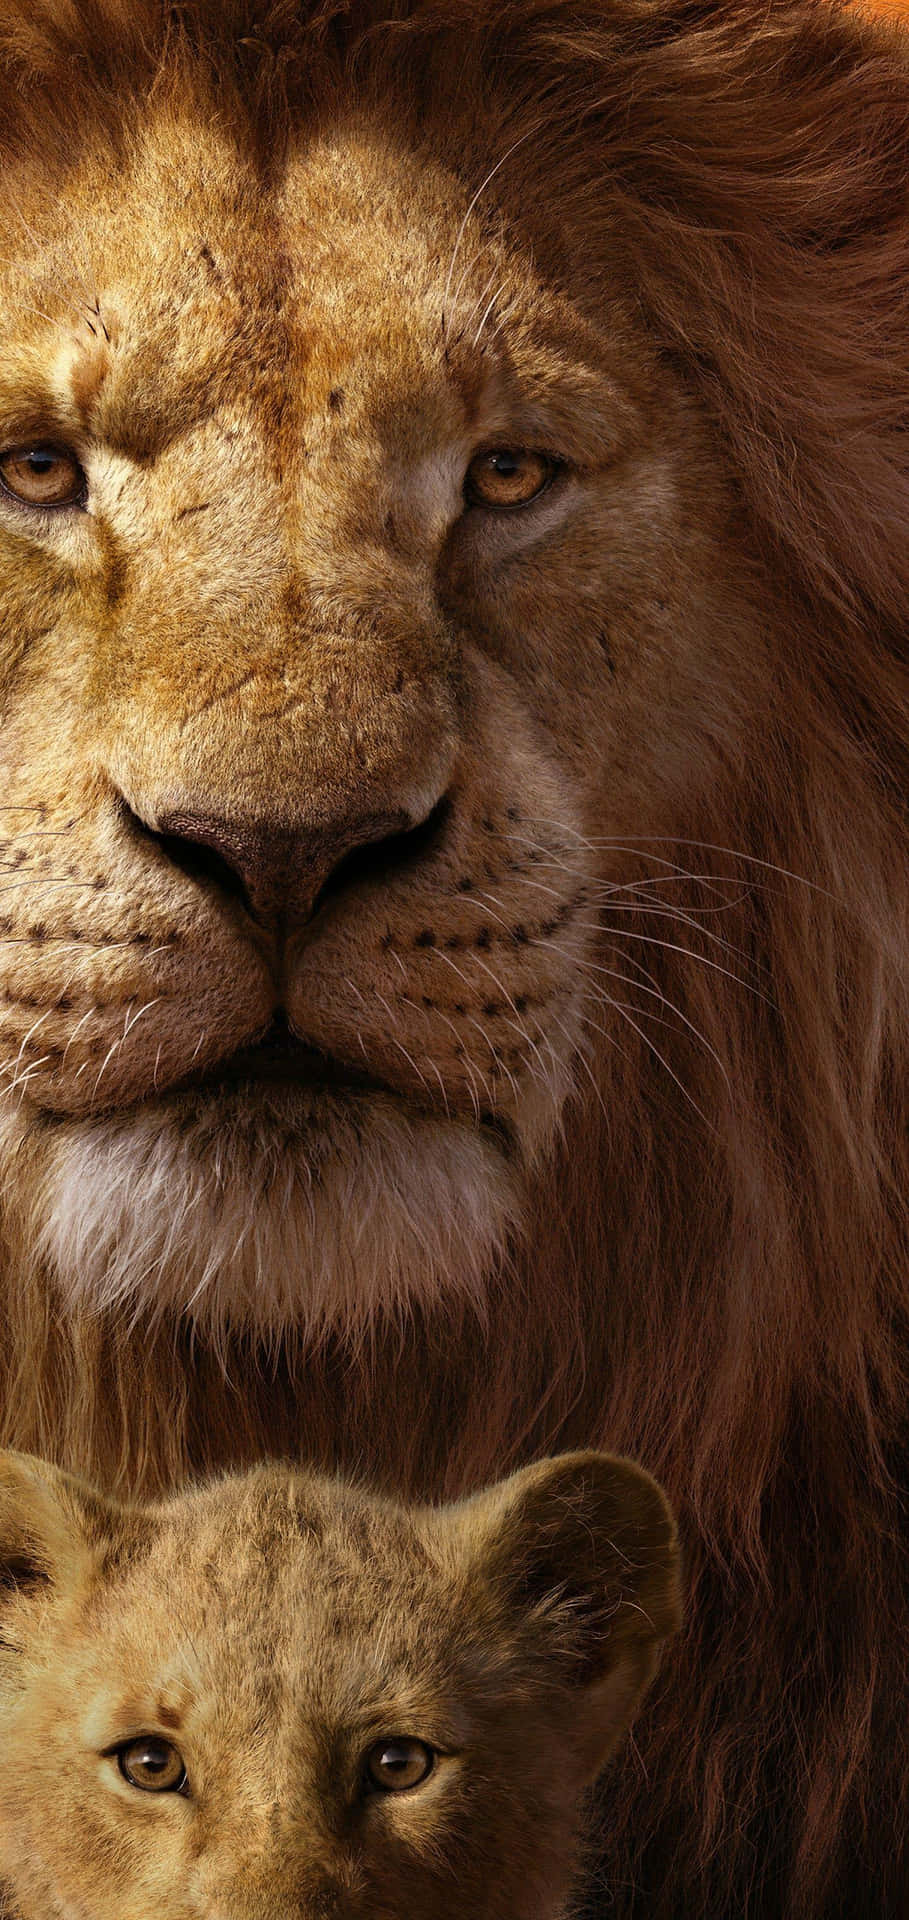 Majestic Lionand Cub Portrait